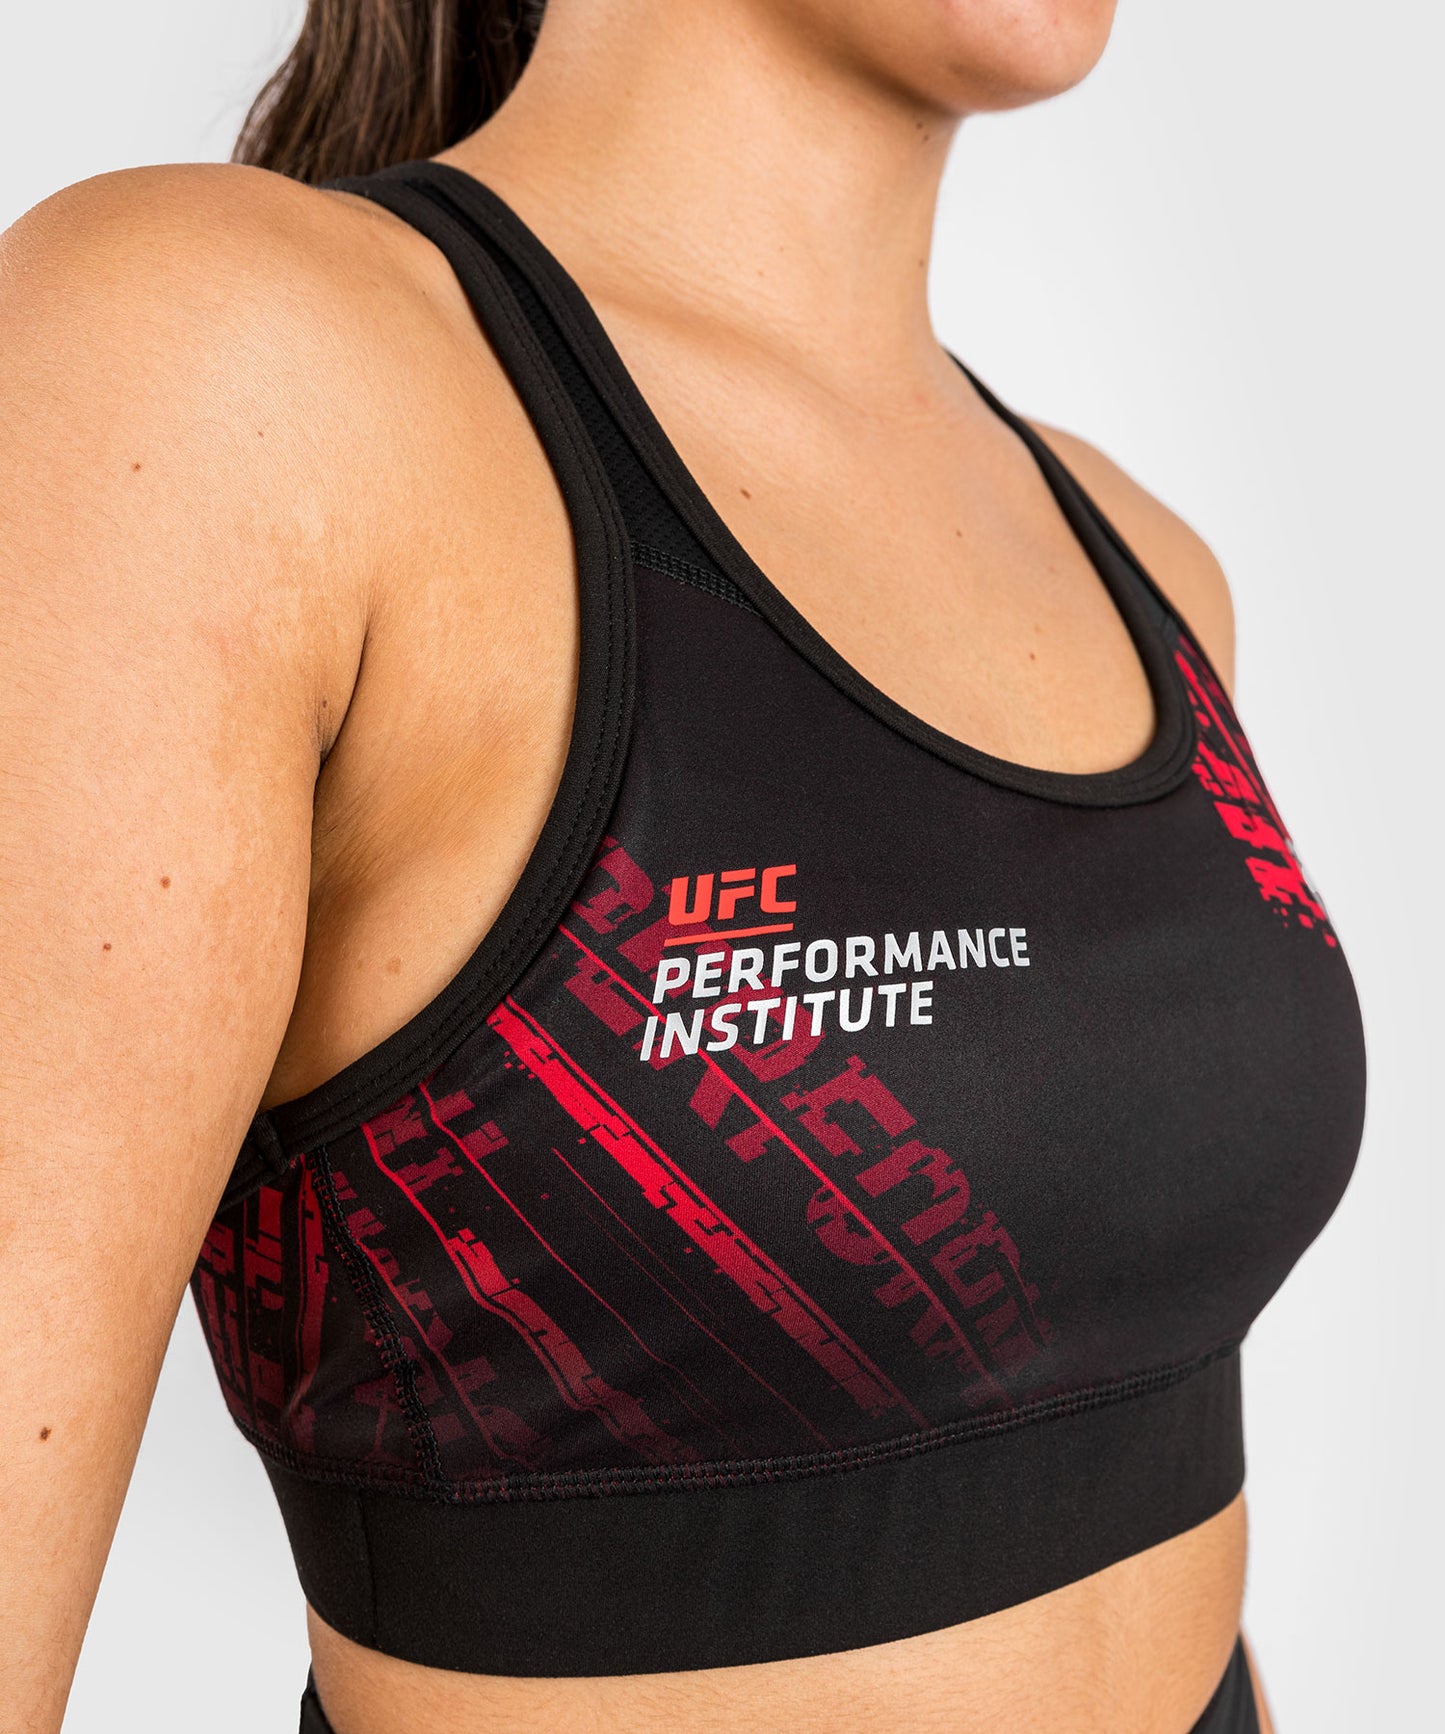 UFC Performance Institute 2.0 Sport-BH für Frauen - Schwarz/Rot